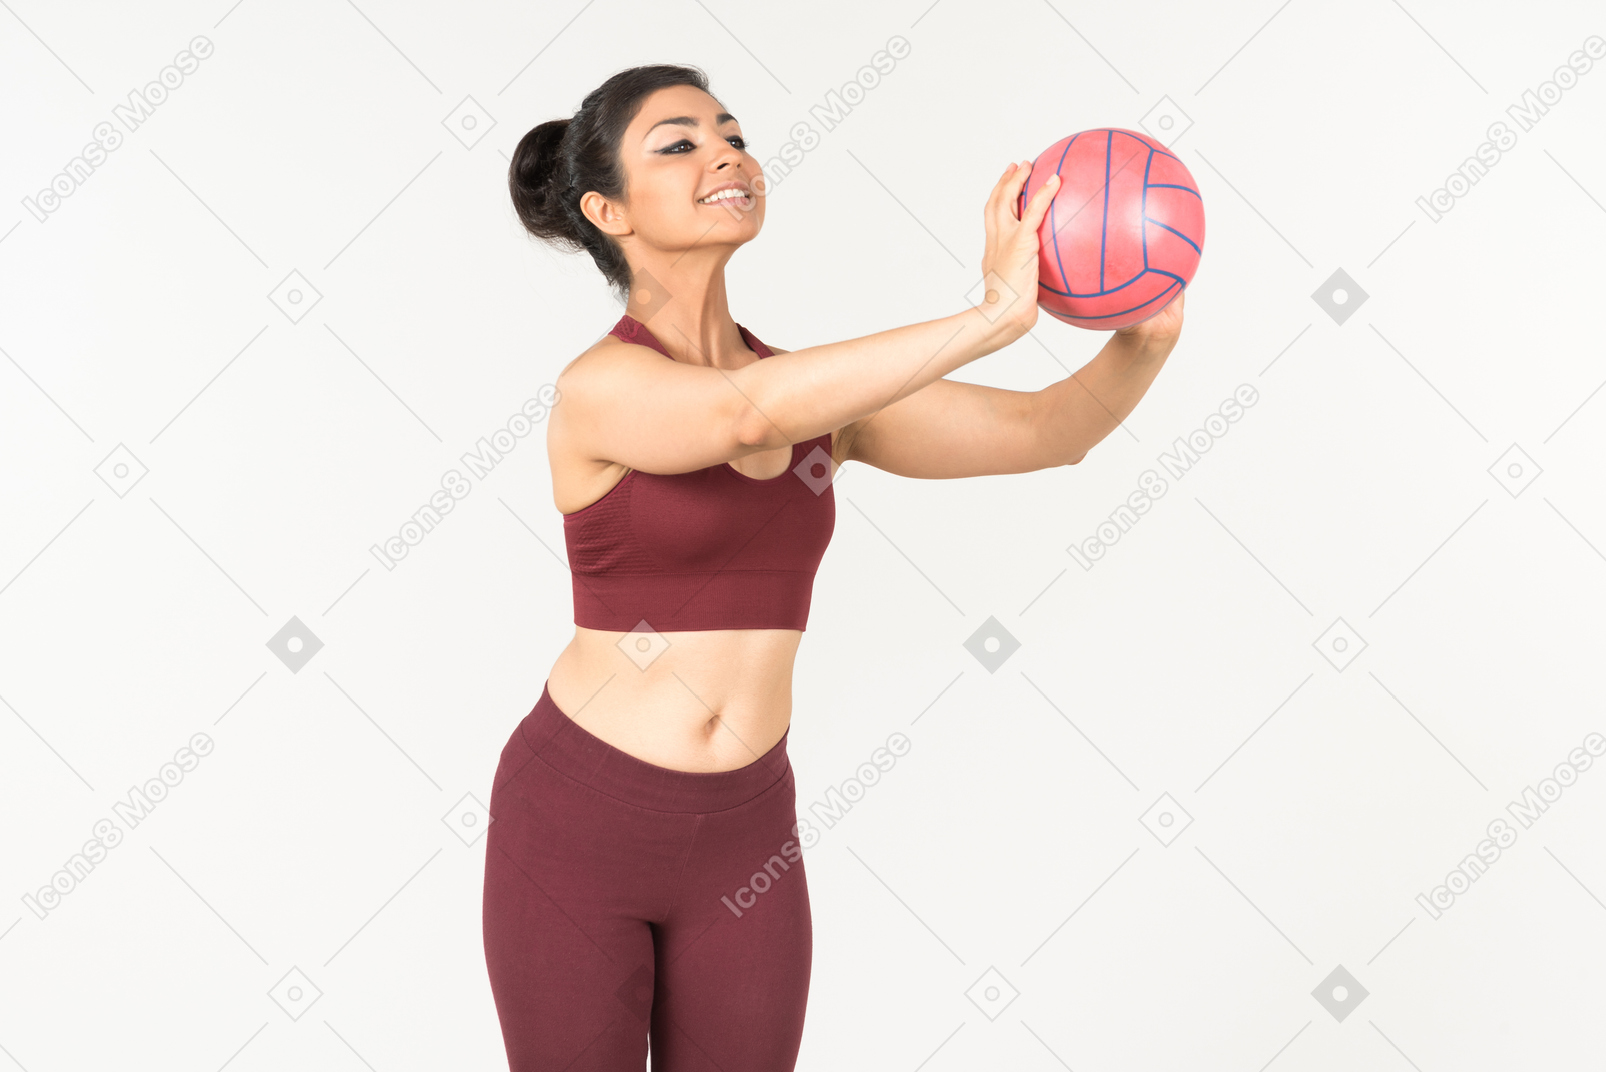 スポーツウェアの若いインド人女性はボールを投げるつもりです。